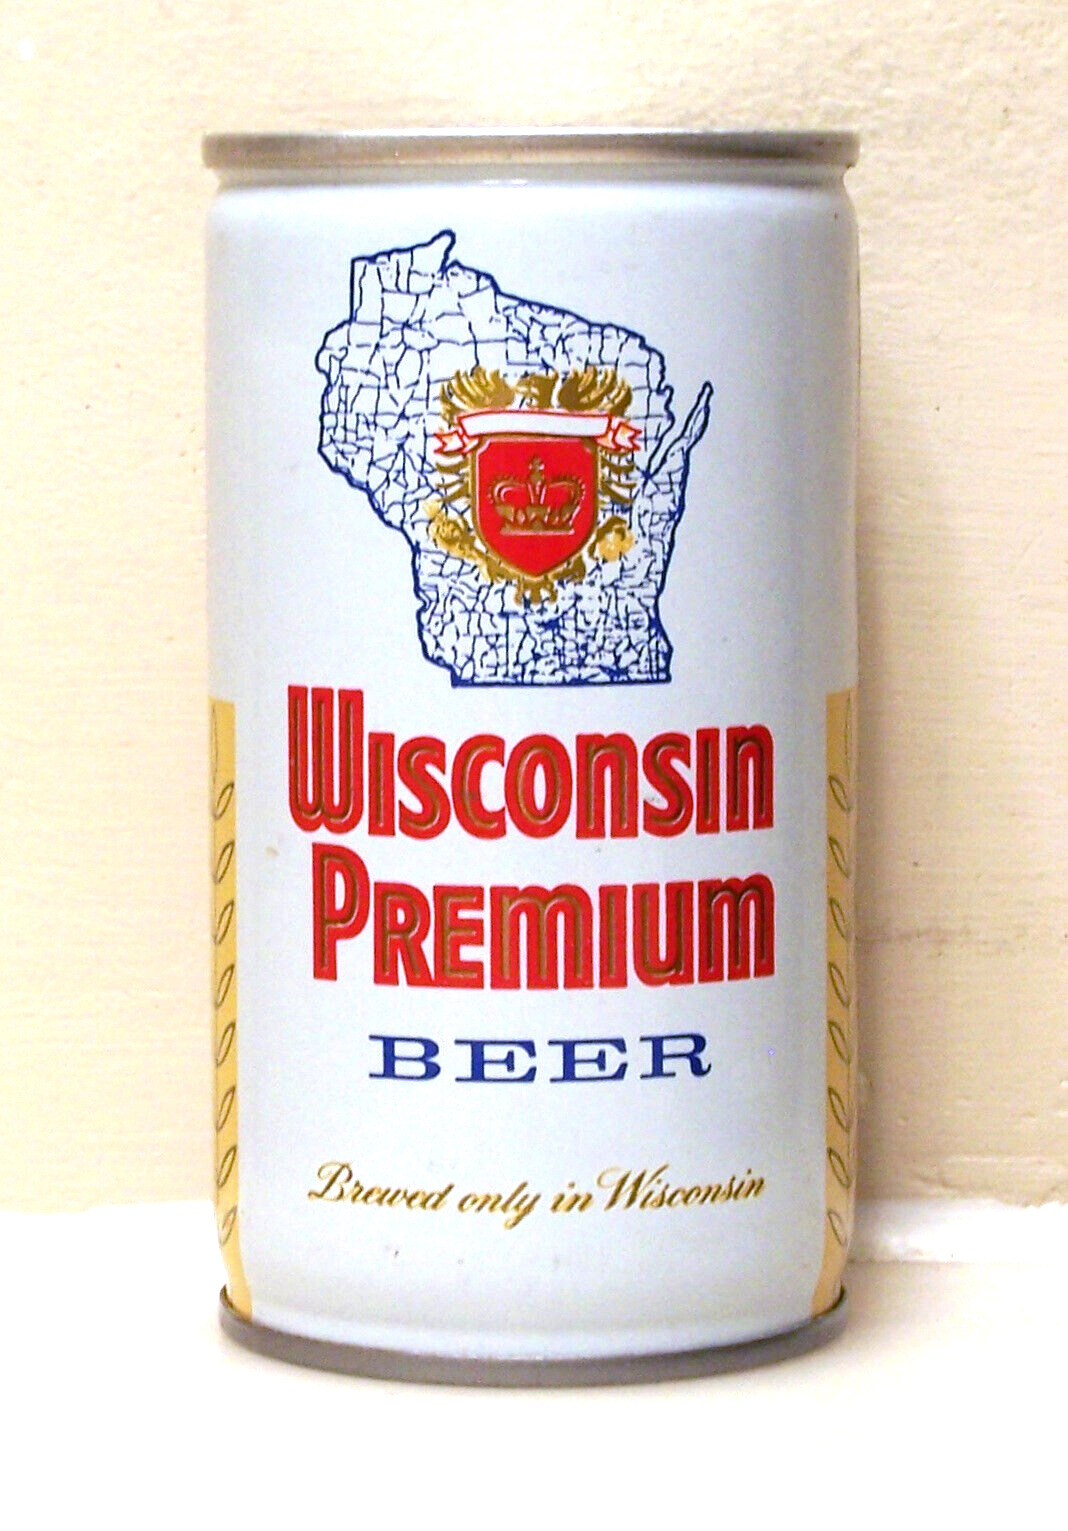 WISCONSIN PREMIUM C/S BO beer can